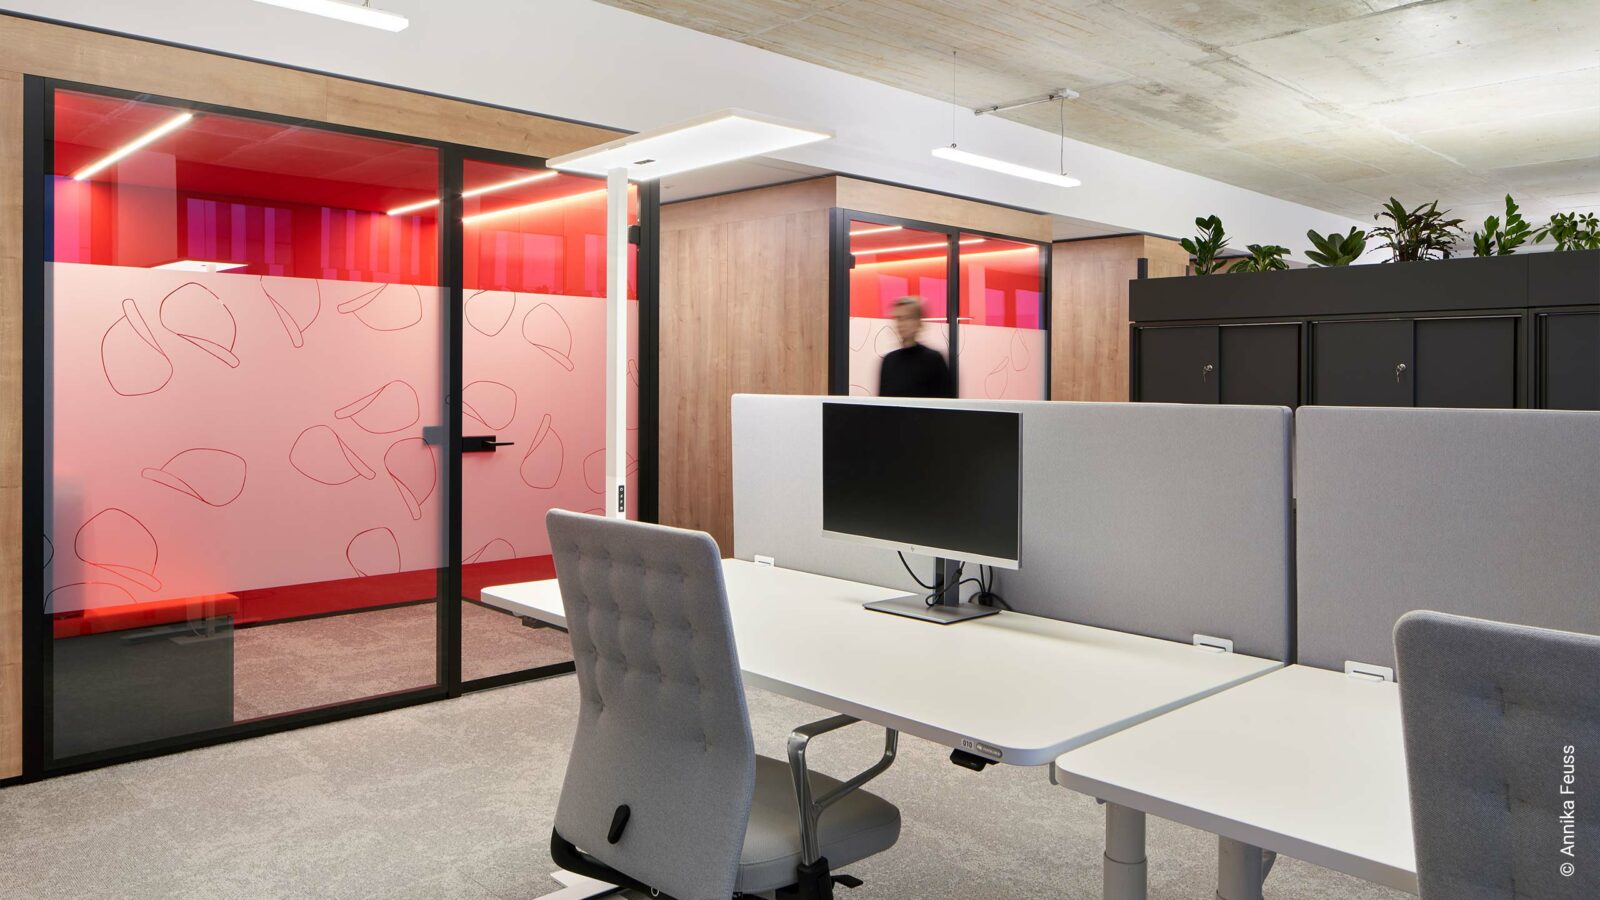 Foto Referenz Intersnack mit Blick auf weiße Arbeitsplätze mit hellgrauen Akustikwänden und Bürodrehstühlen, schwarze Schränke mit Pflanzaufsätzen und abgetrennte kleine Räume in Rot.